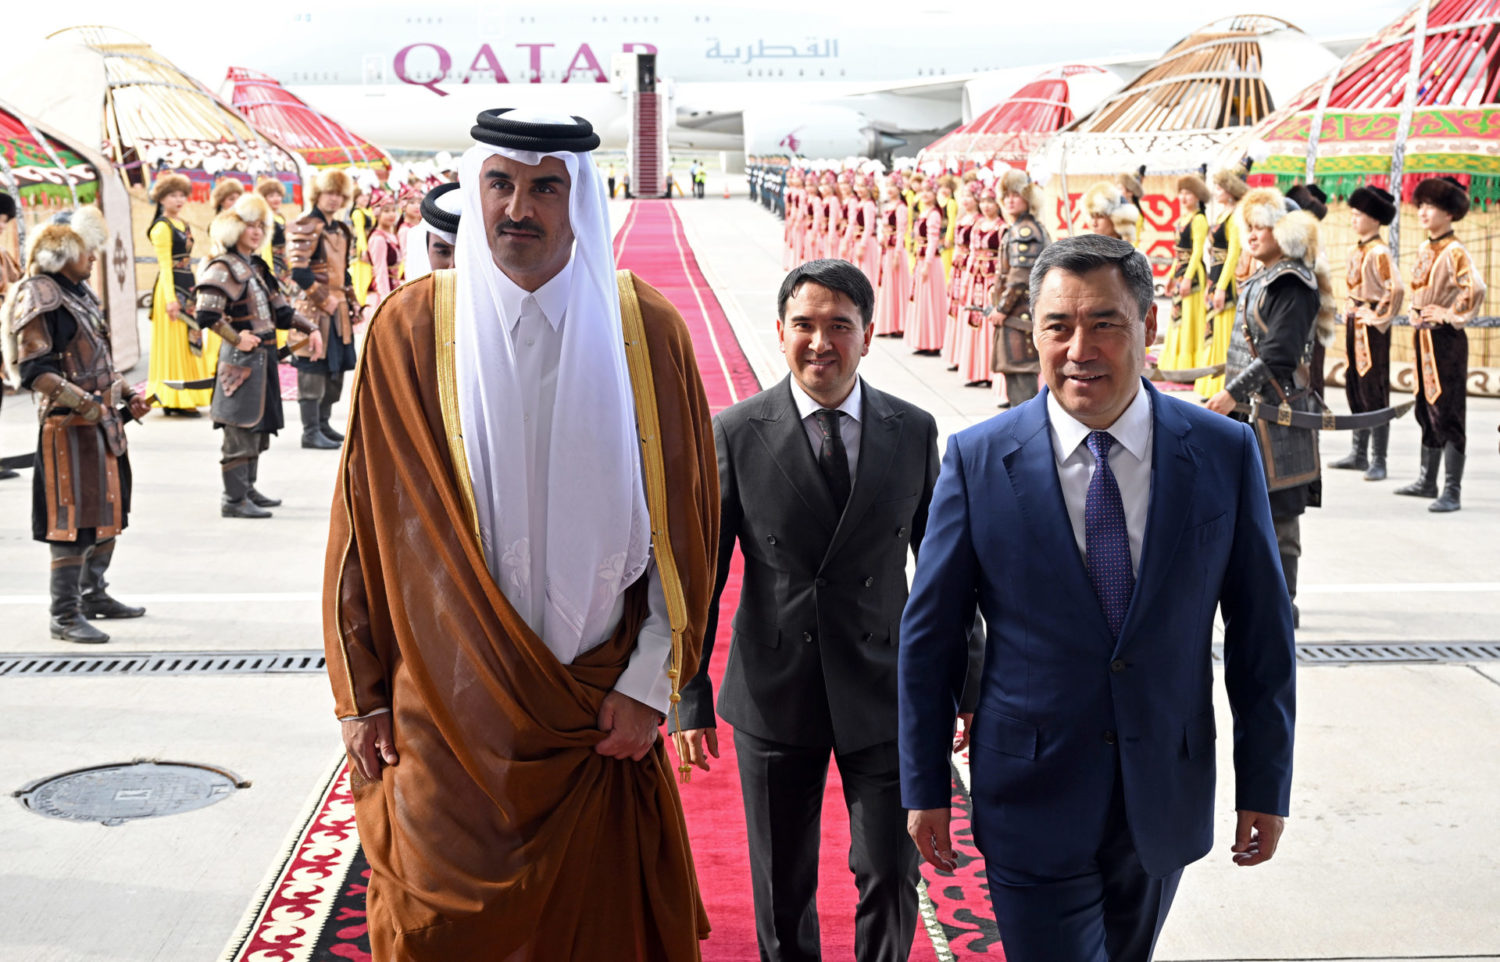 Катар эмиринин сапары: Өлкө лидерлери чакан жана кеңири курамда сүйлөшөт  